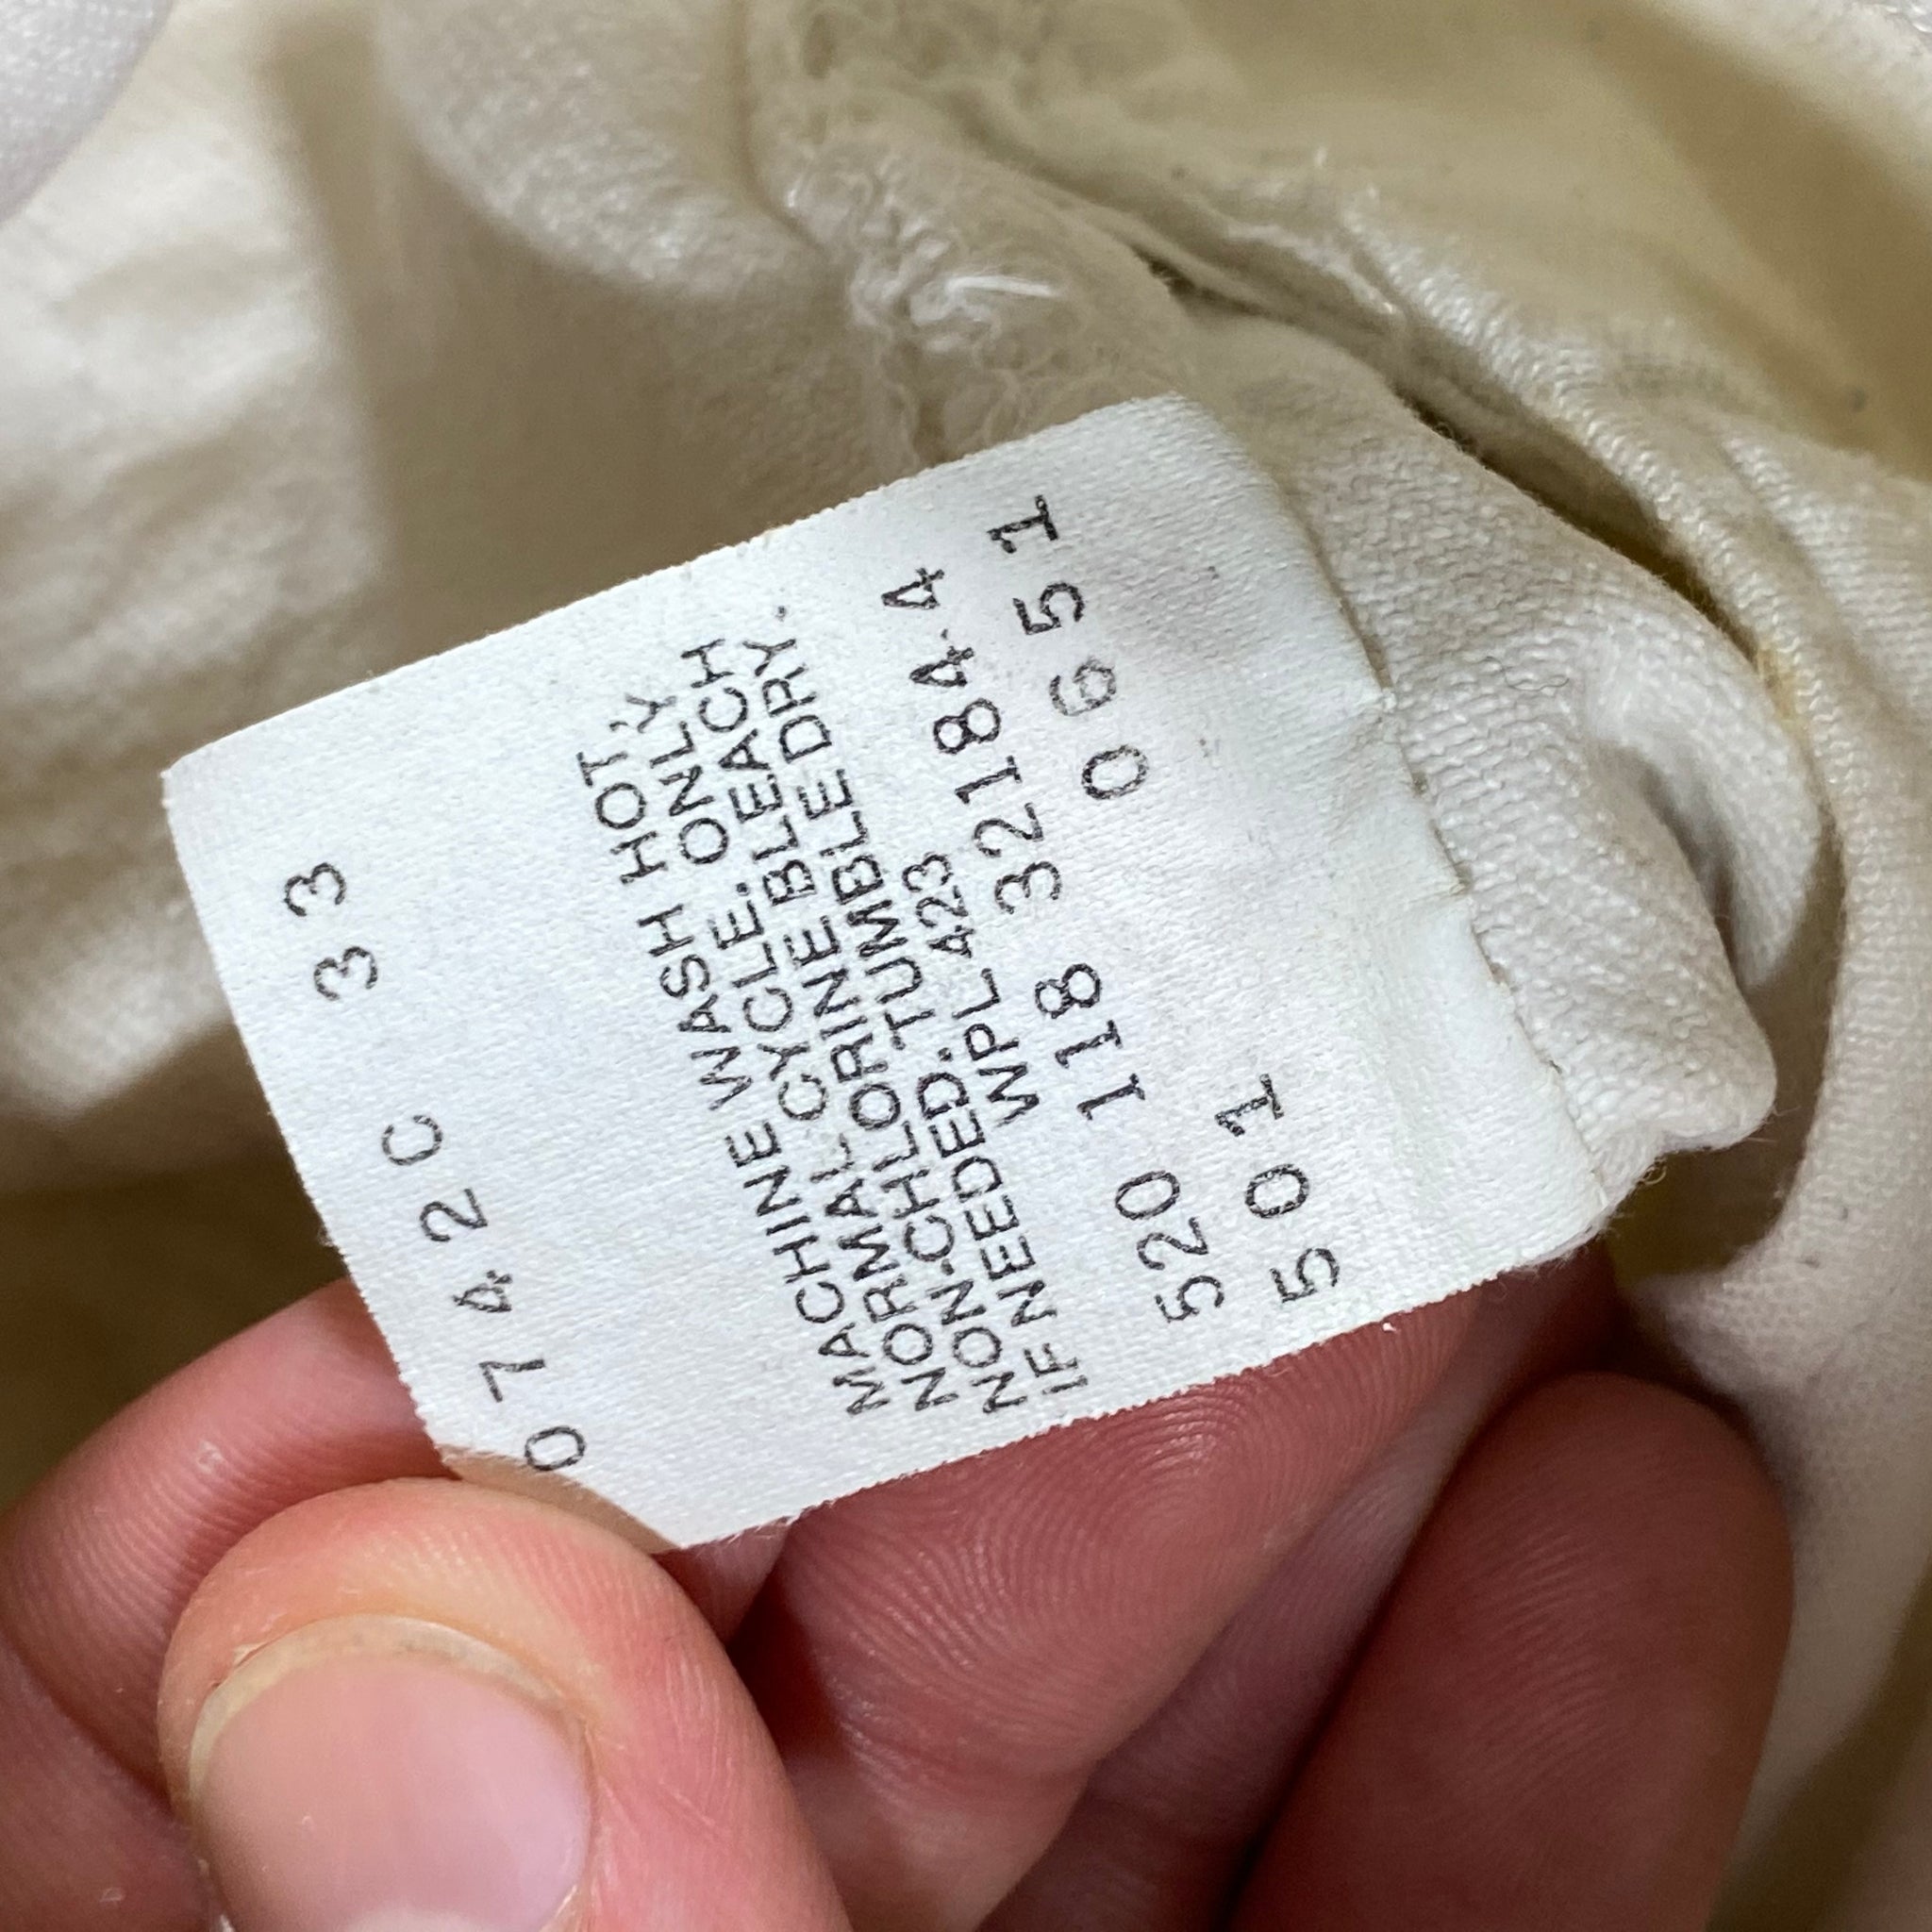 80s Levis 501 white jeans. 31/32